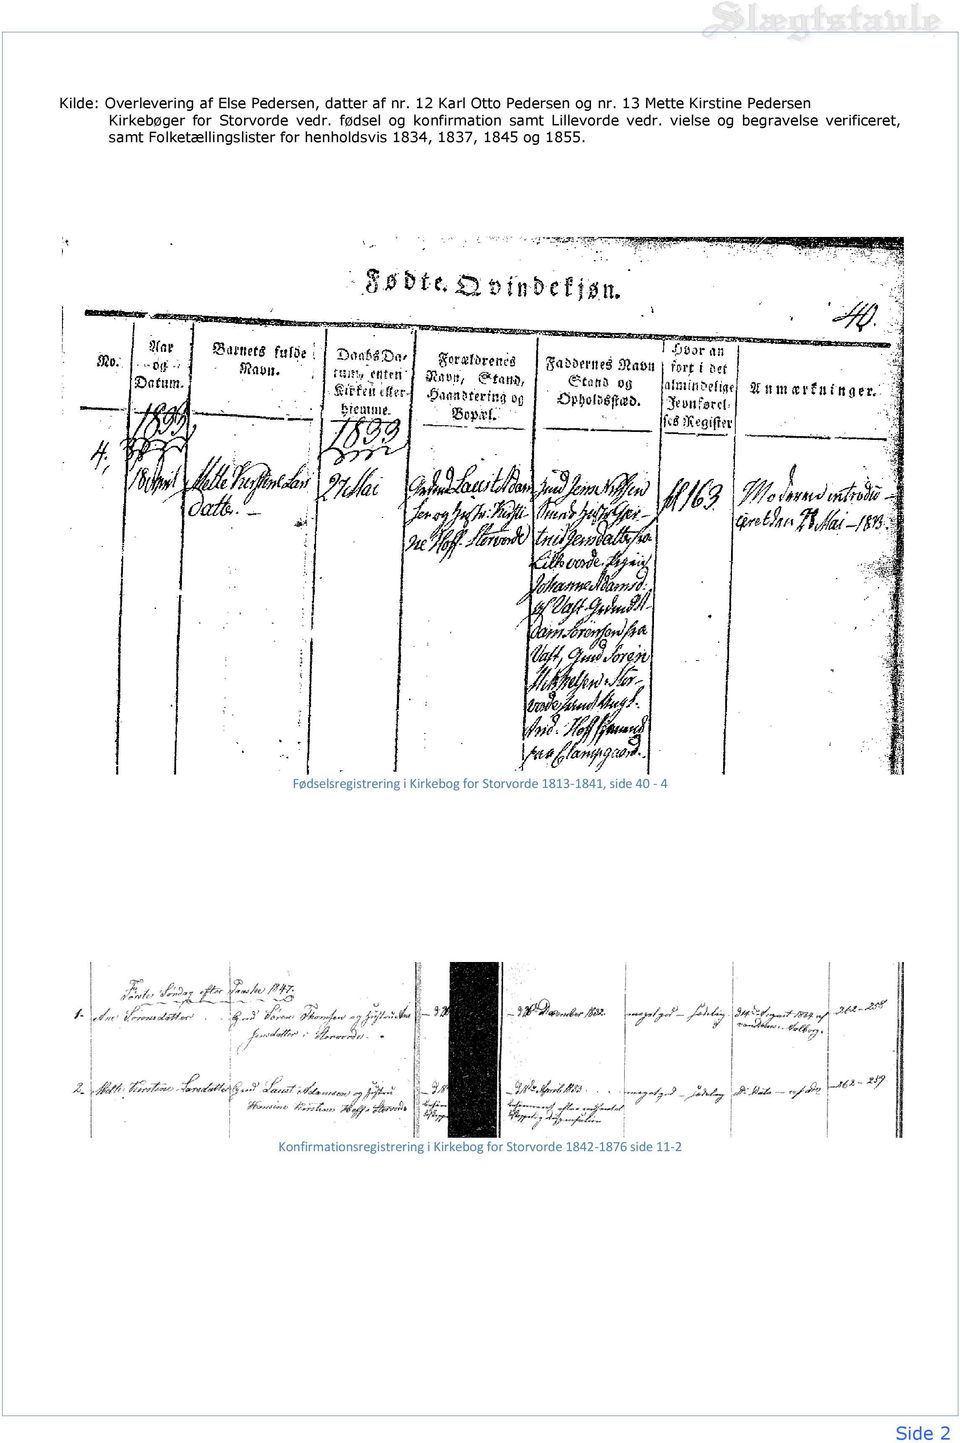 vielse og begravelse verificeret, samt Folketællingslister for henholdsvis 1834, 1837, 1845 og 1855.